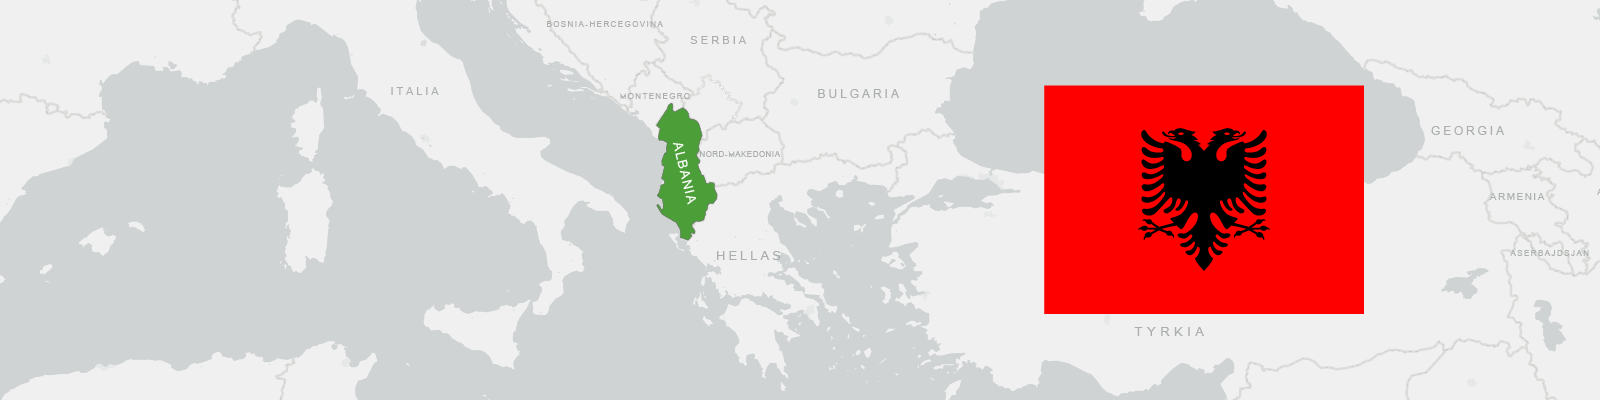 Albanias grenser, land og flagg